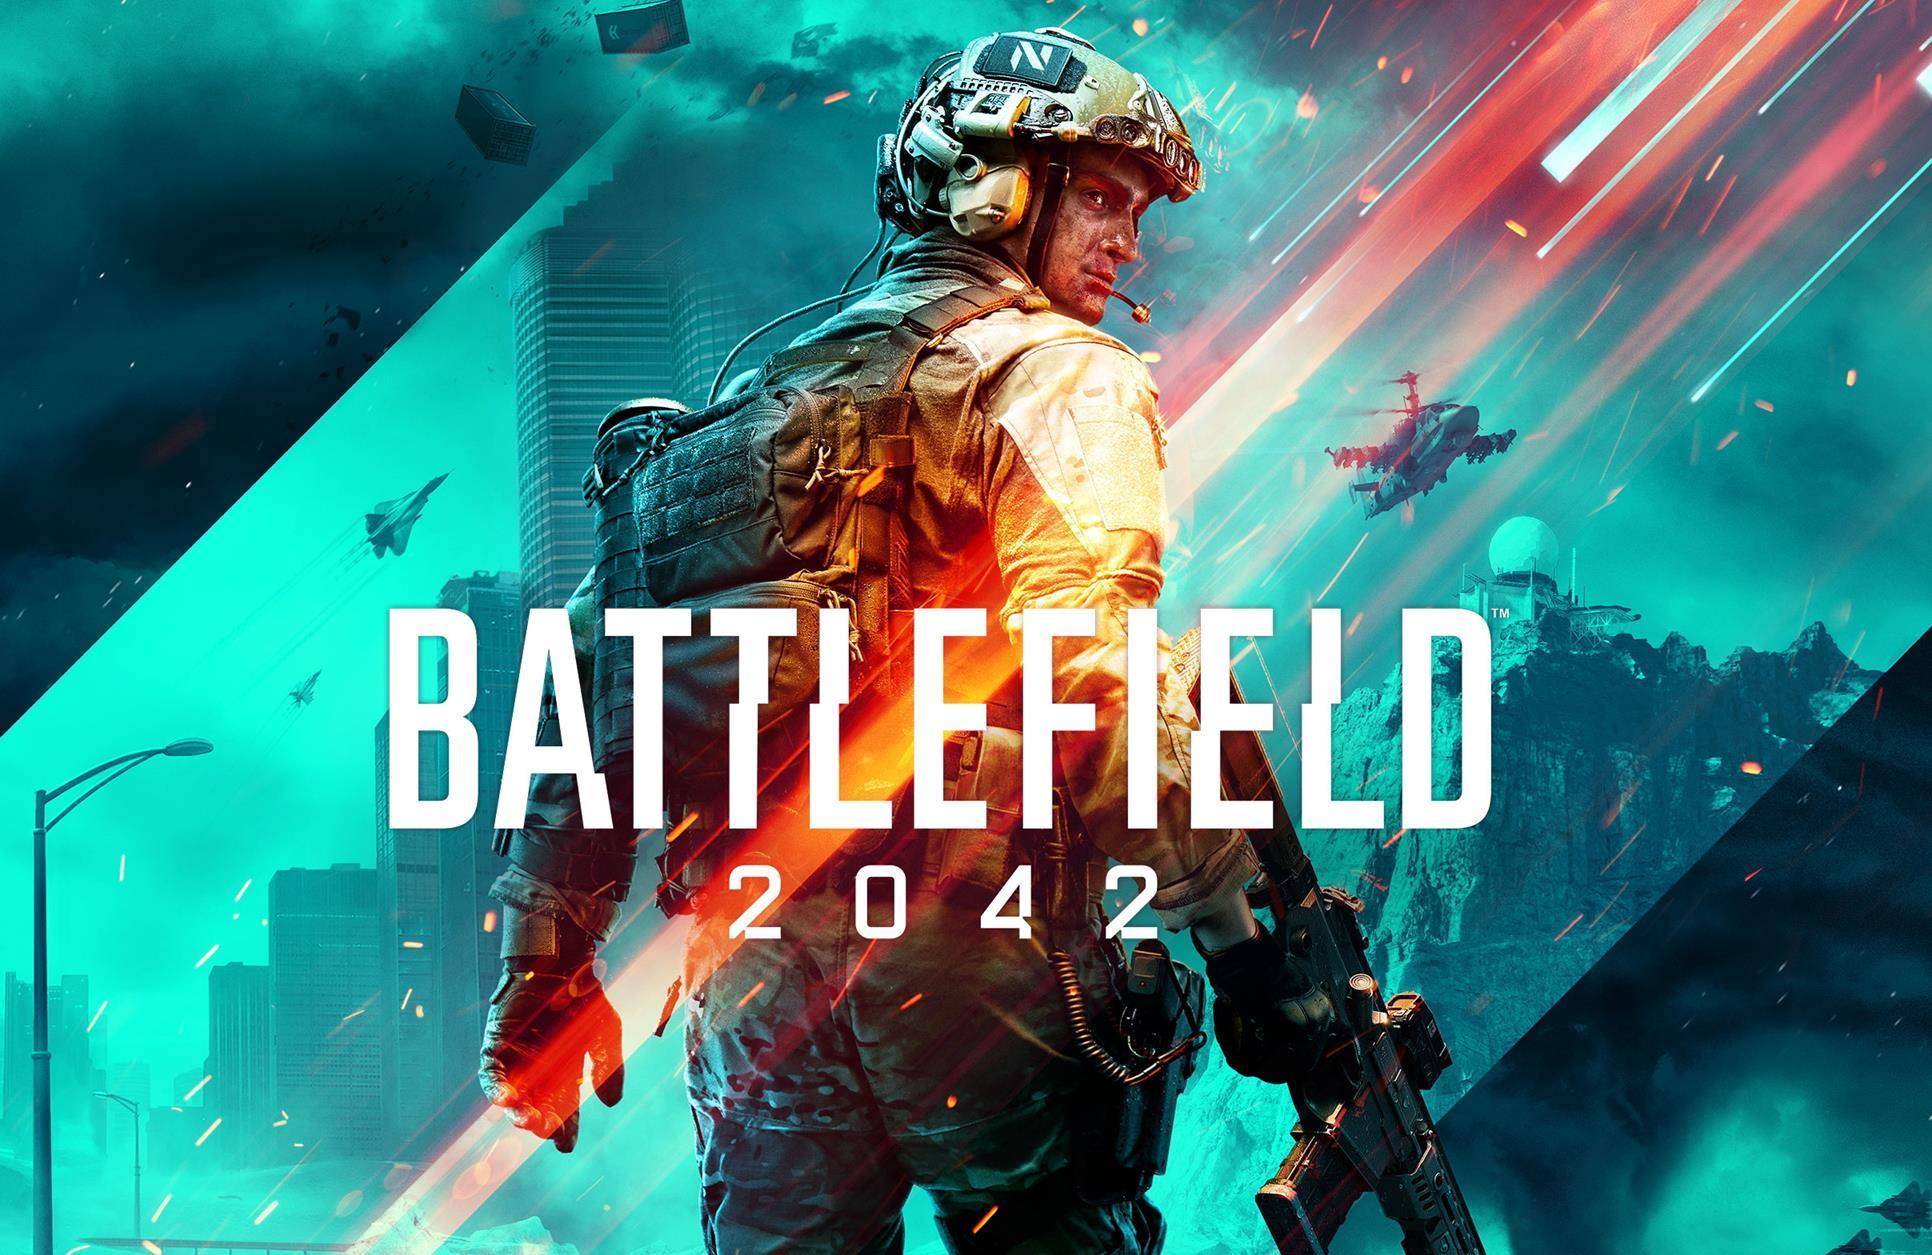 טריילר חדש ומפתיע לבאטלפילד 2042! 💥 ה-Battlefield החדש לא יאכזב אותכם! - EXON - גיימינג ותוכנות